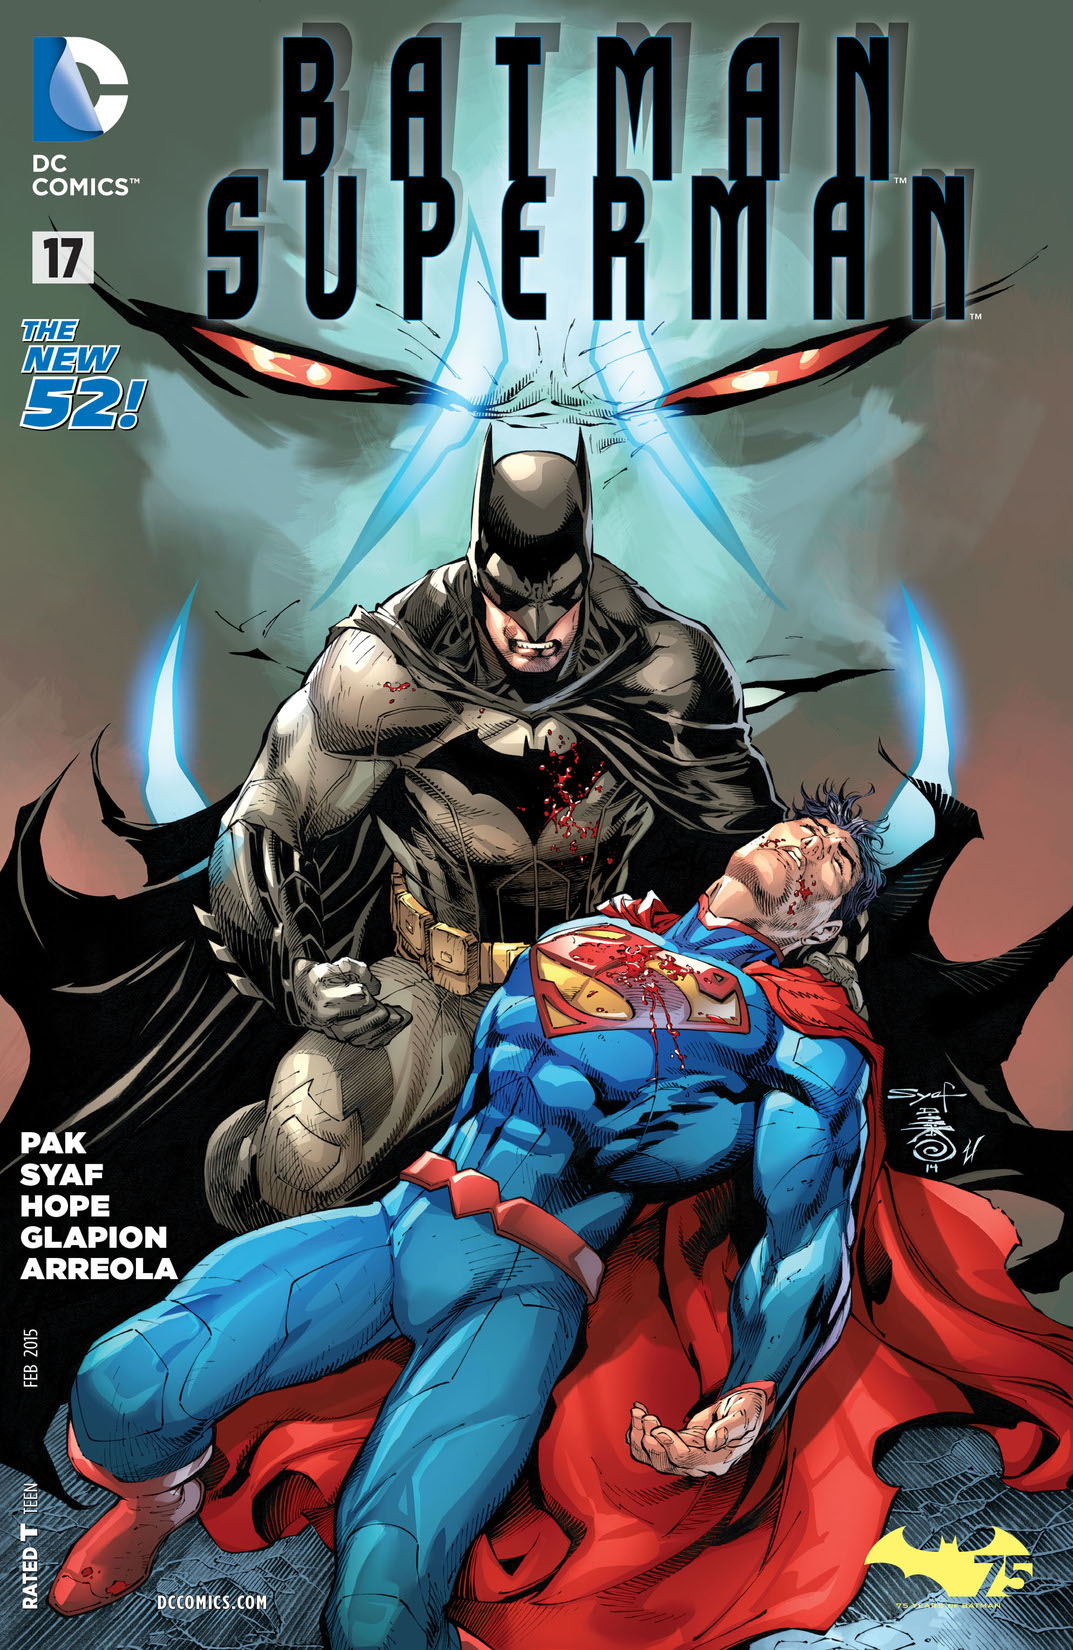 Batman/Superman (2013-) #17 preview images